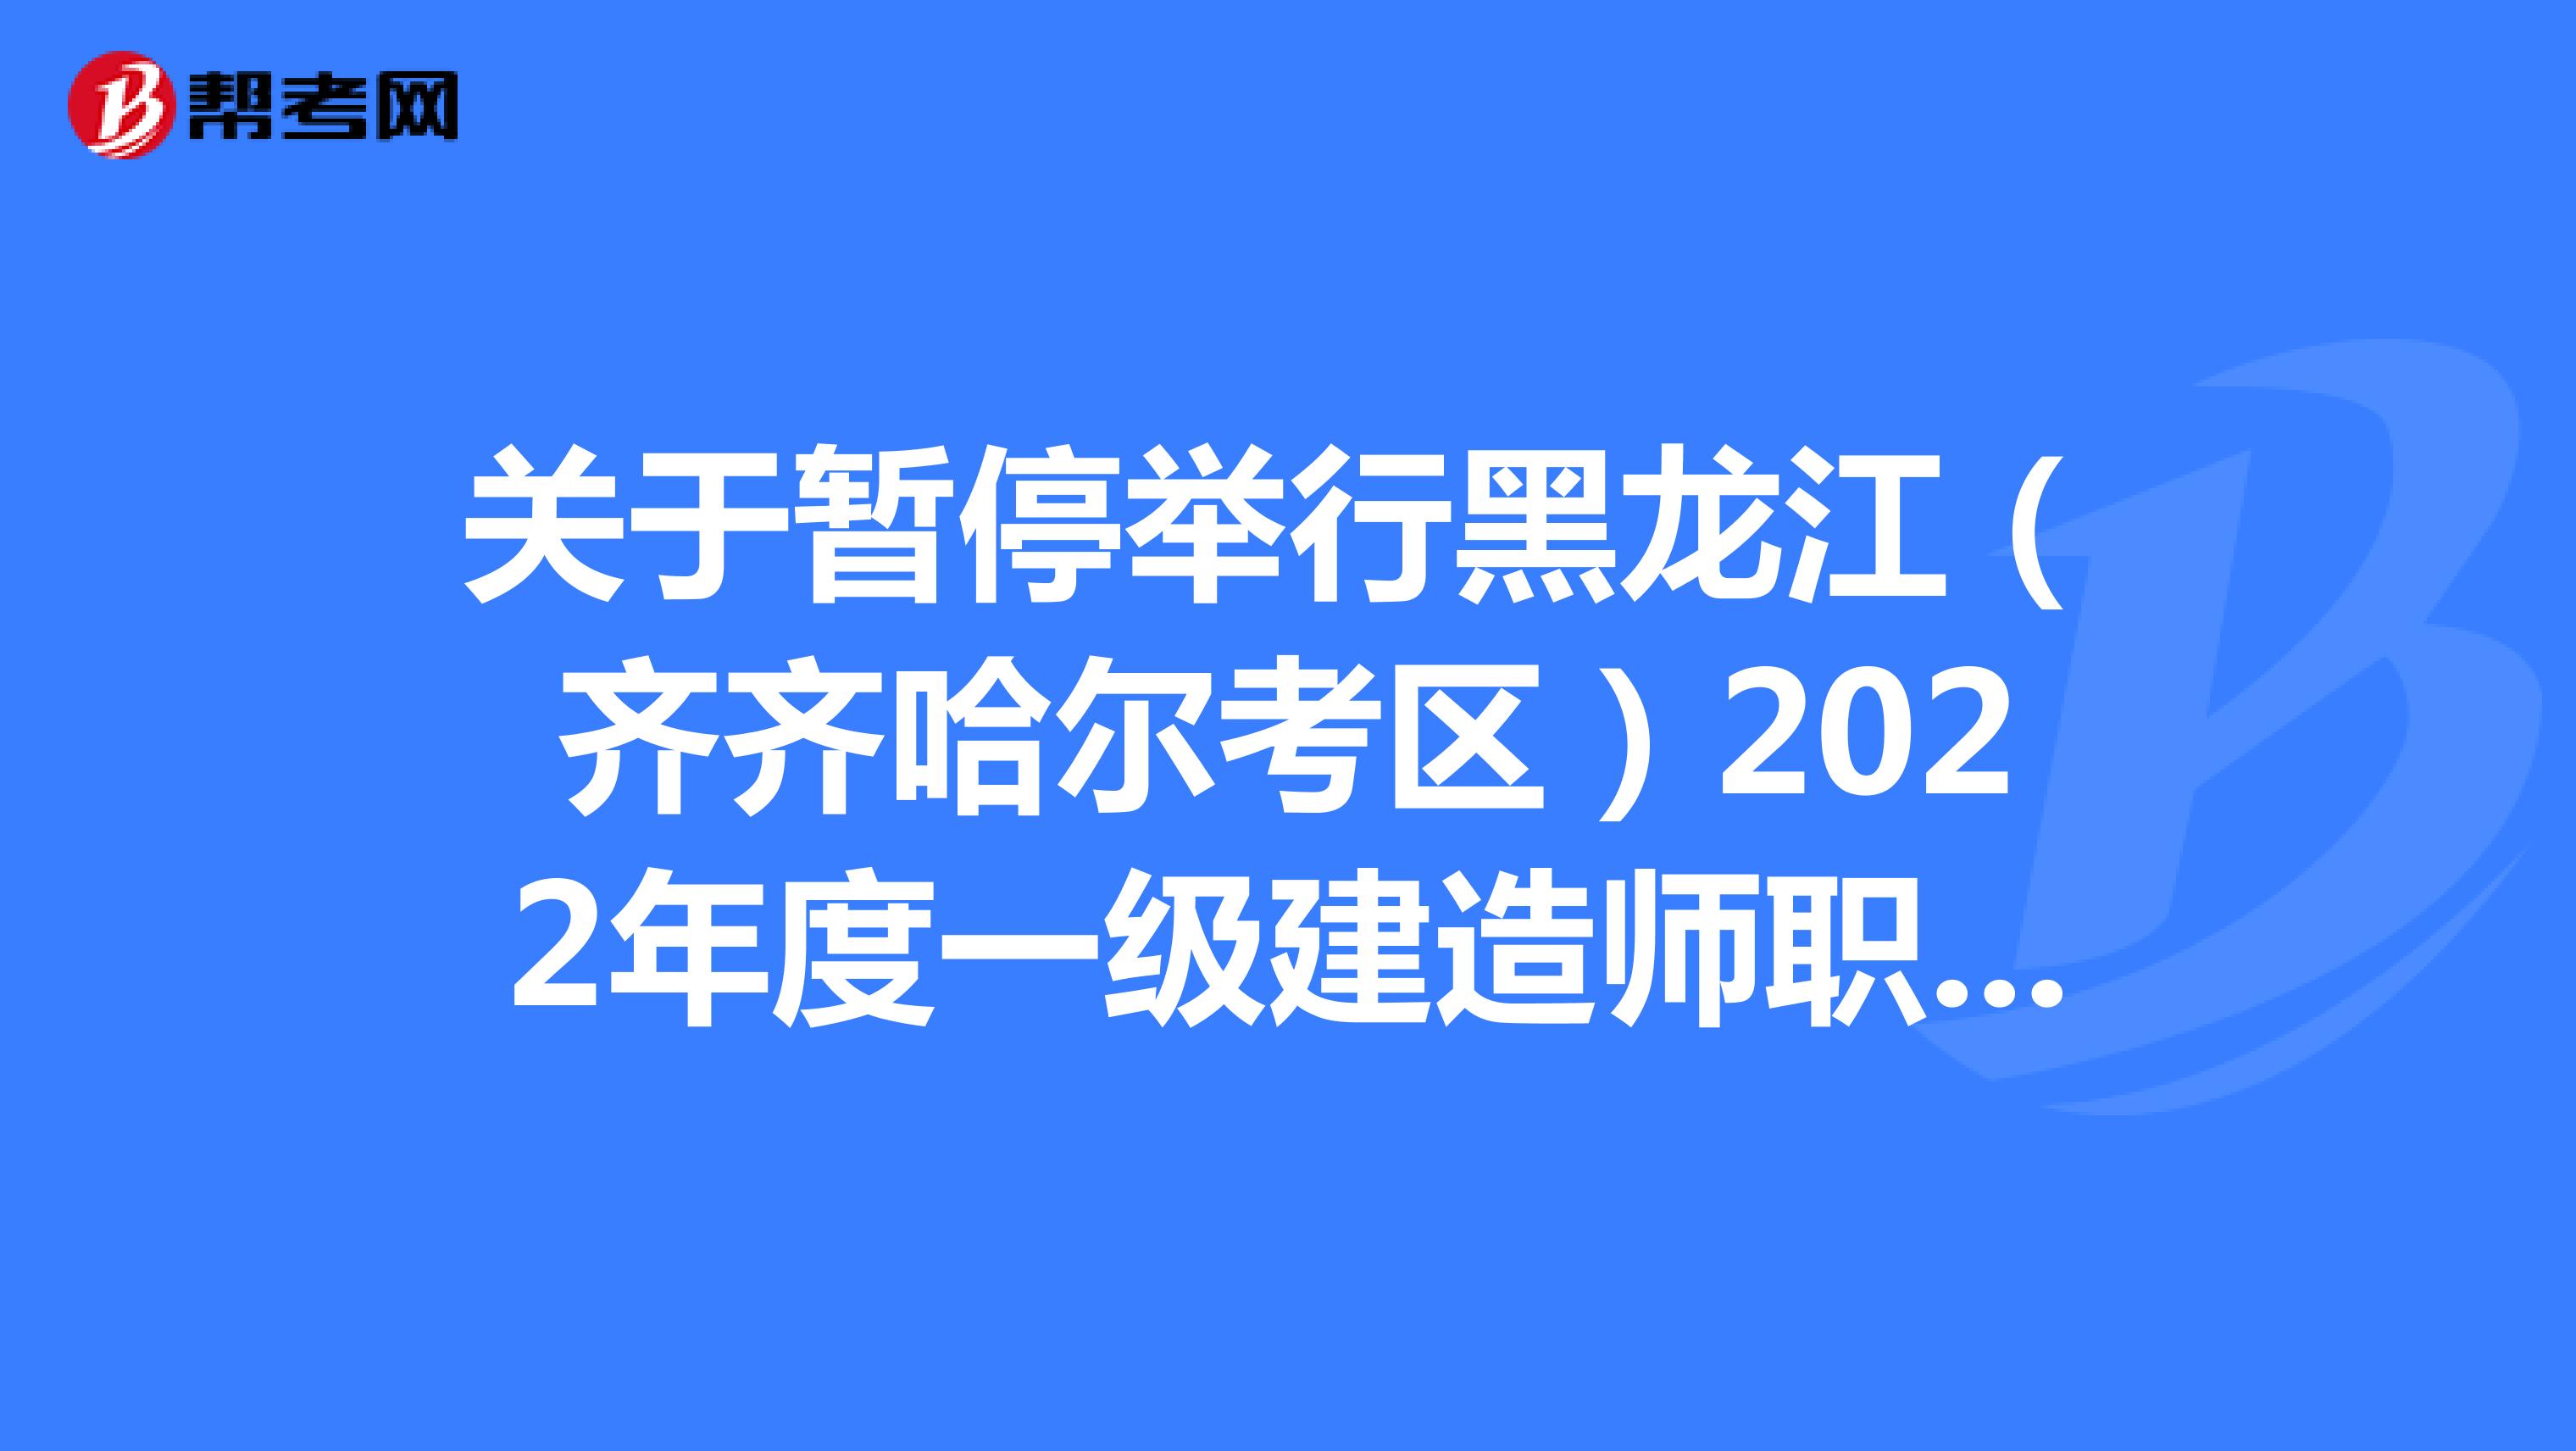 关于暂停举行黑龙江（齐齐哈尔考区）2022年度一级建造师职业资格考试的通知